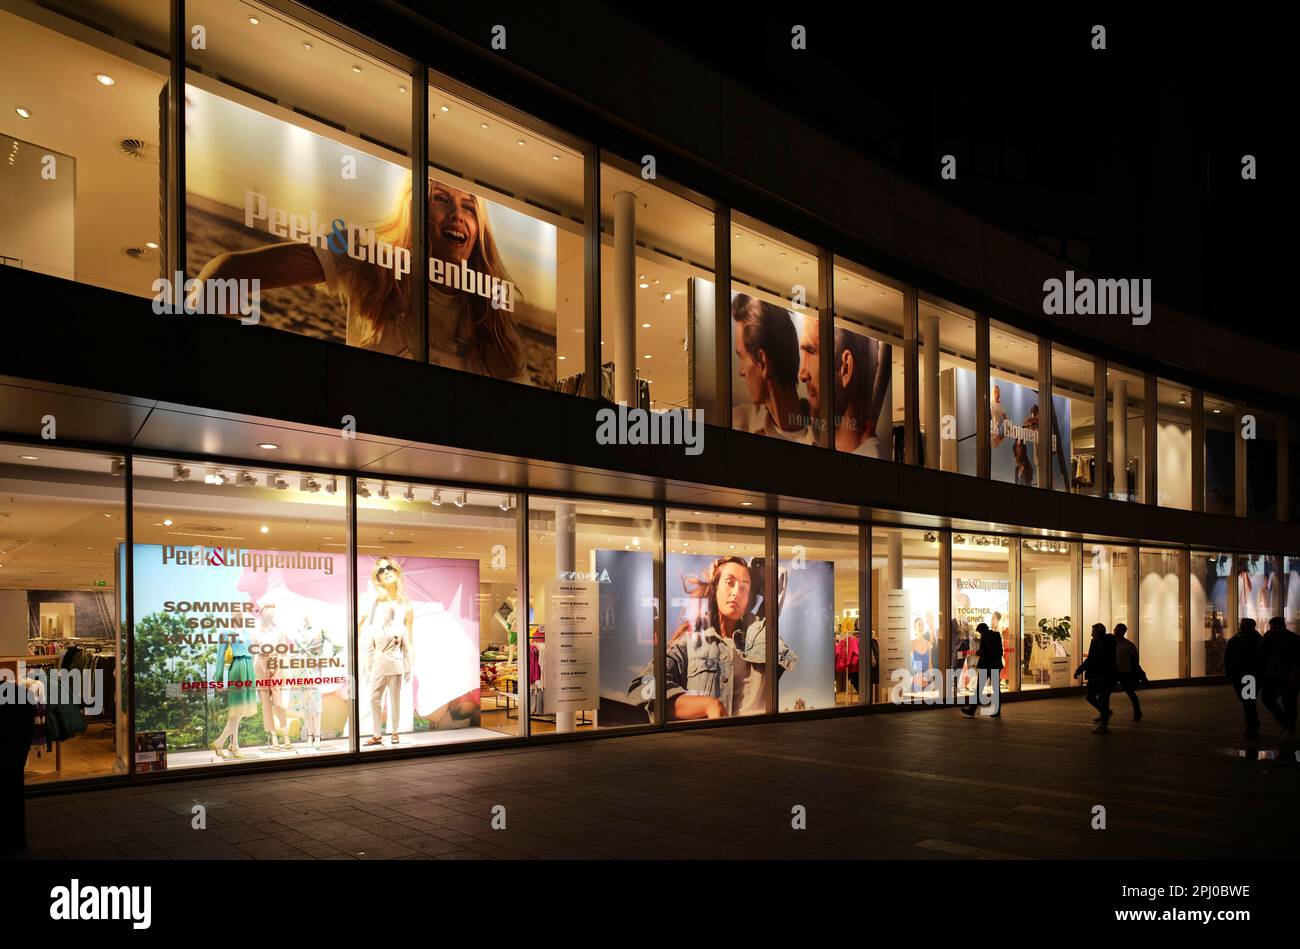 PEEK & Cloppenburg, Kaufhauskette, Nachtaufnahme, Mainz, Rheinland-Pfalz, Deutschland Stockfoto